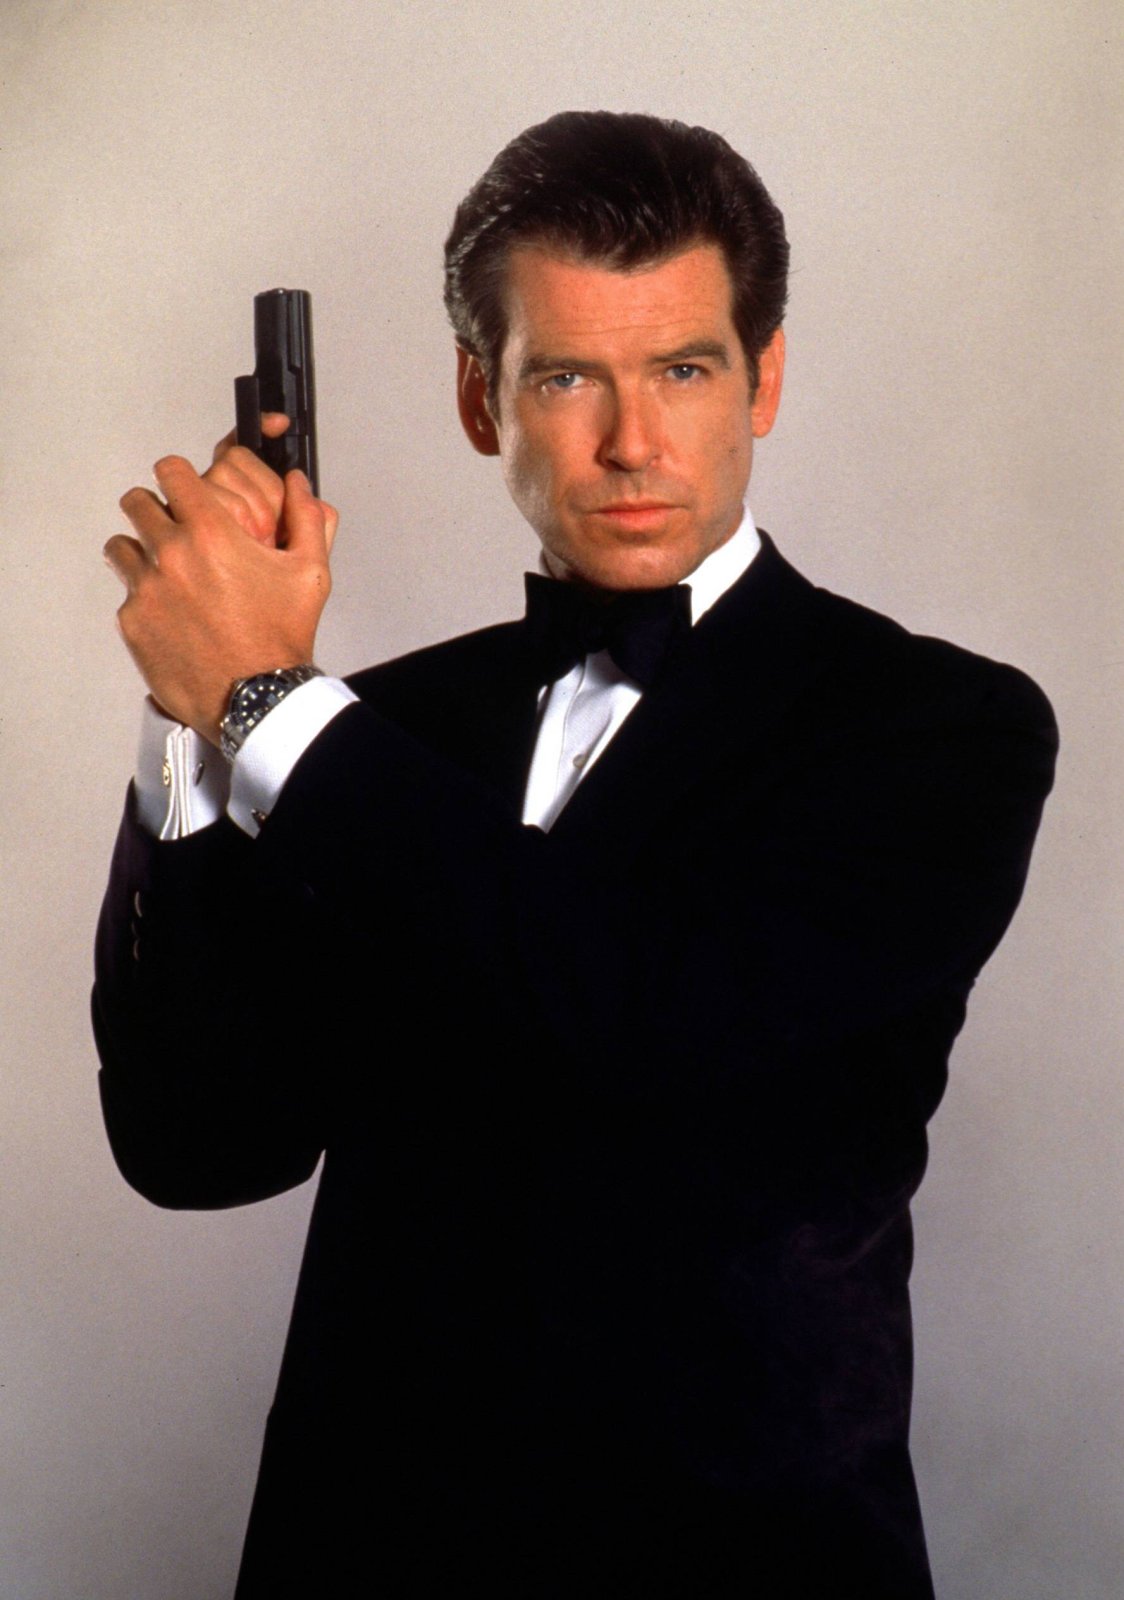 Pierce Brosnan als James Bond 007 mit erhobener Pistole